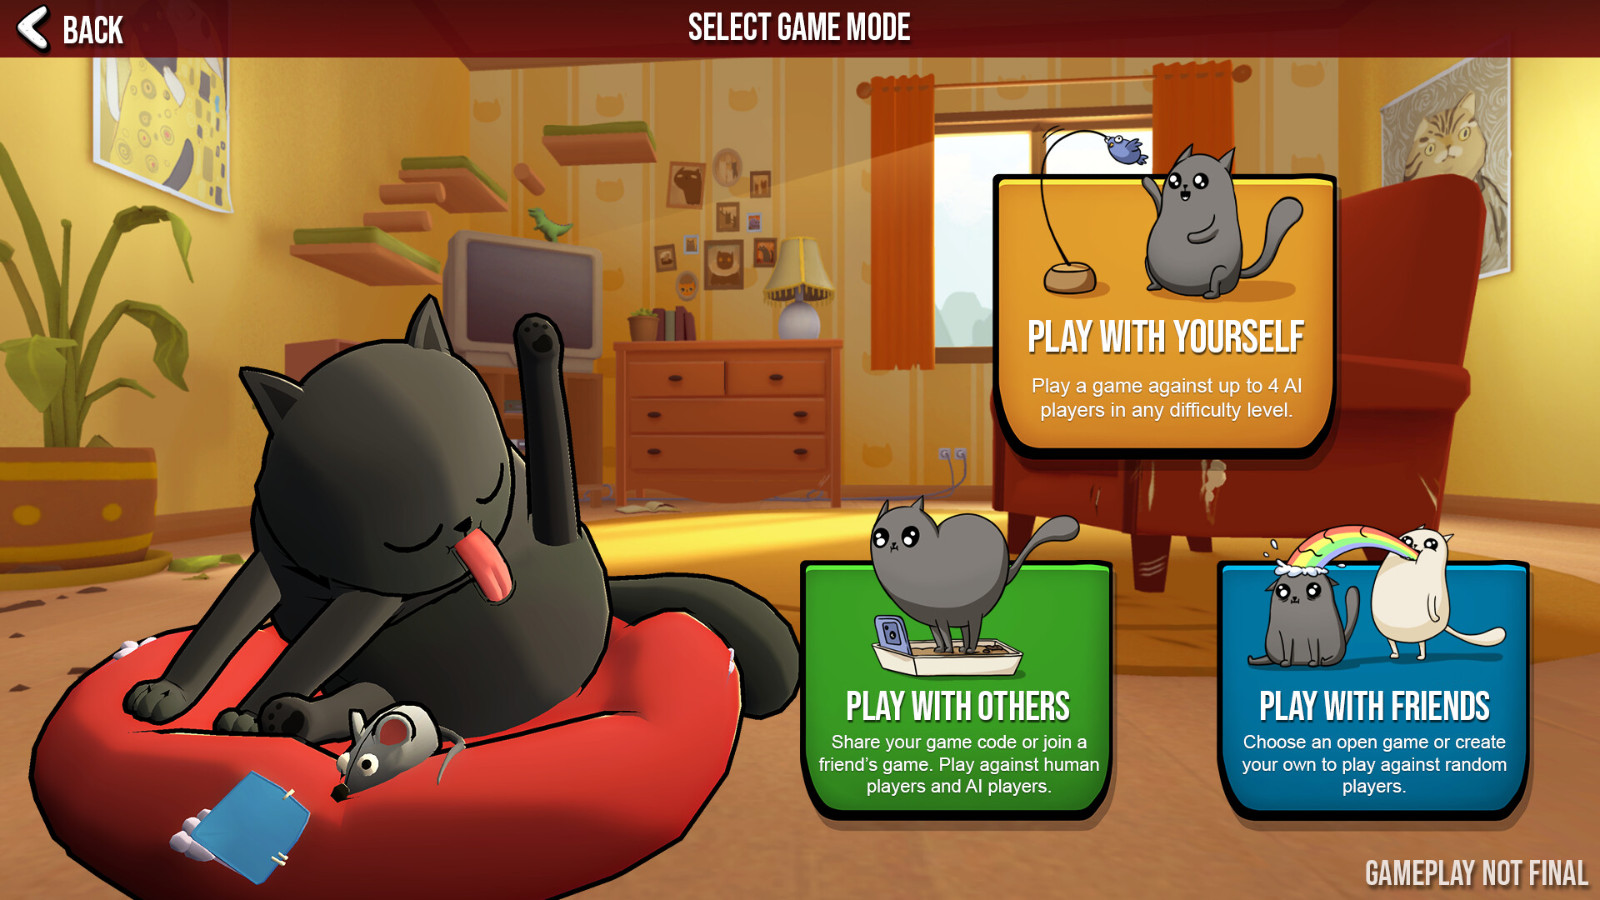 休闲游戏《爆炸猫2》Steam页面上线 发售日期待定